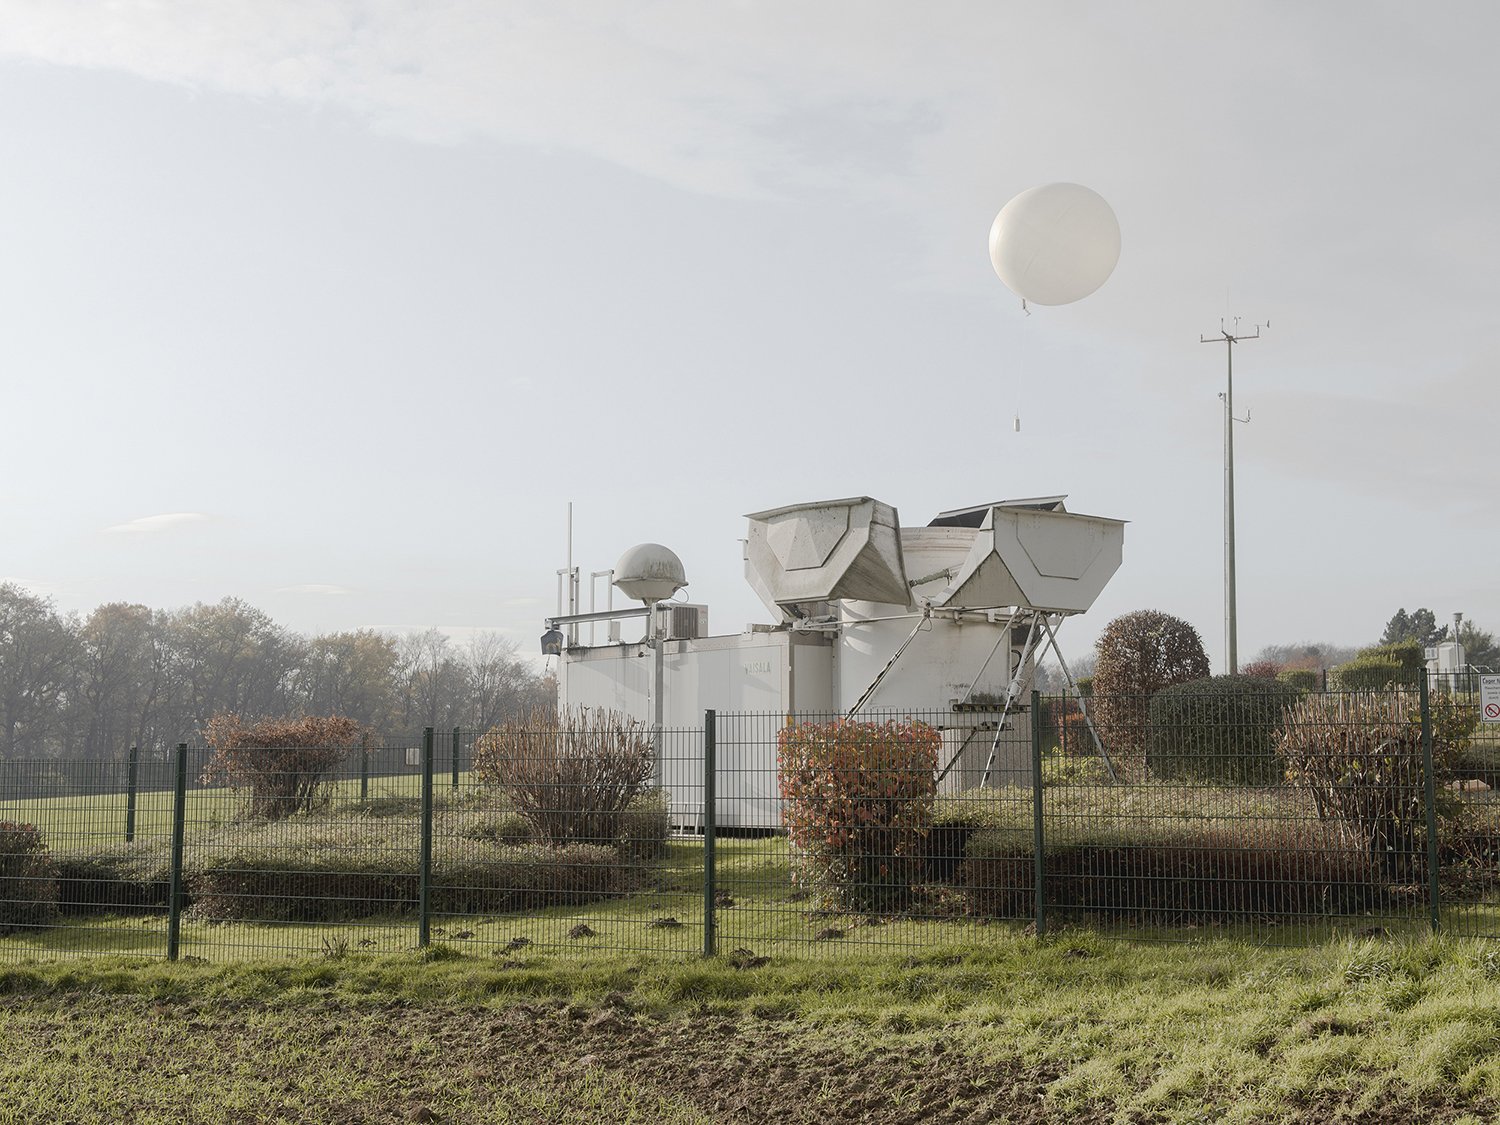  Am Standort Essen-Bredeney des Deut-schen Wetterdienstes (DWD) starten im 12 Stun-den-Takt Wetterballone zur Erfassung von Wetterdaten.   